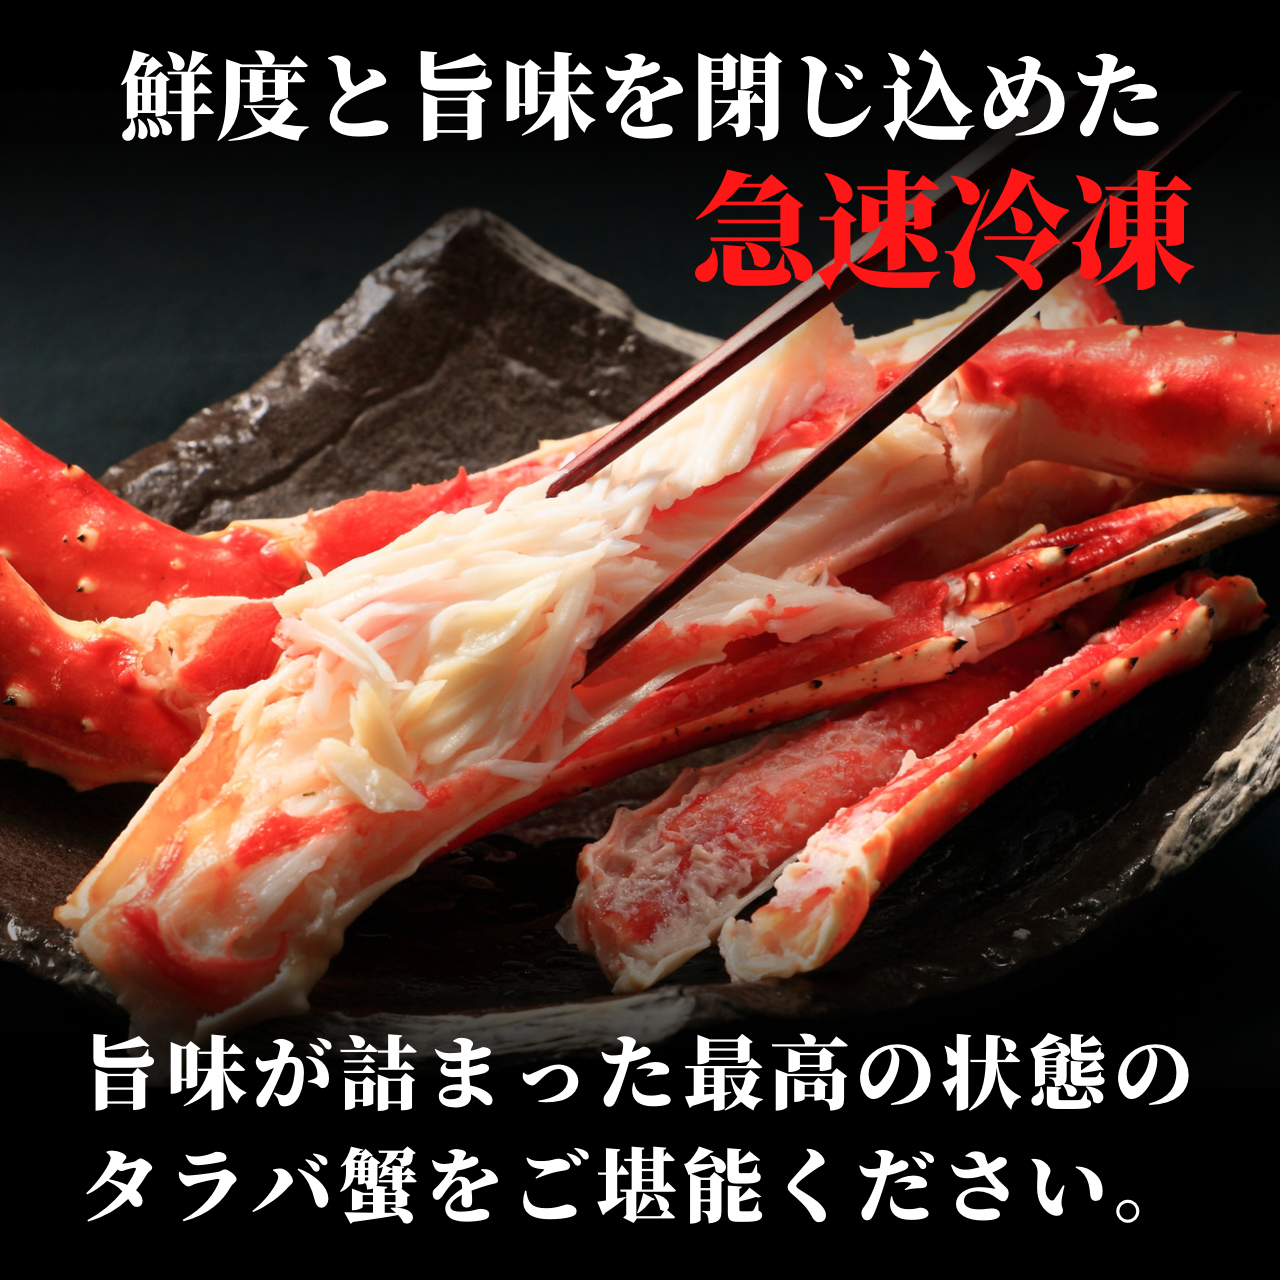 タラバ蟹姿2〜2.5kg前後〈ボイル冷凍〉 | 食.COM〜札幌中央卸売市場直送〜